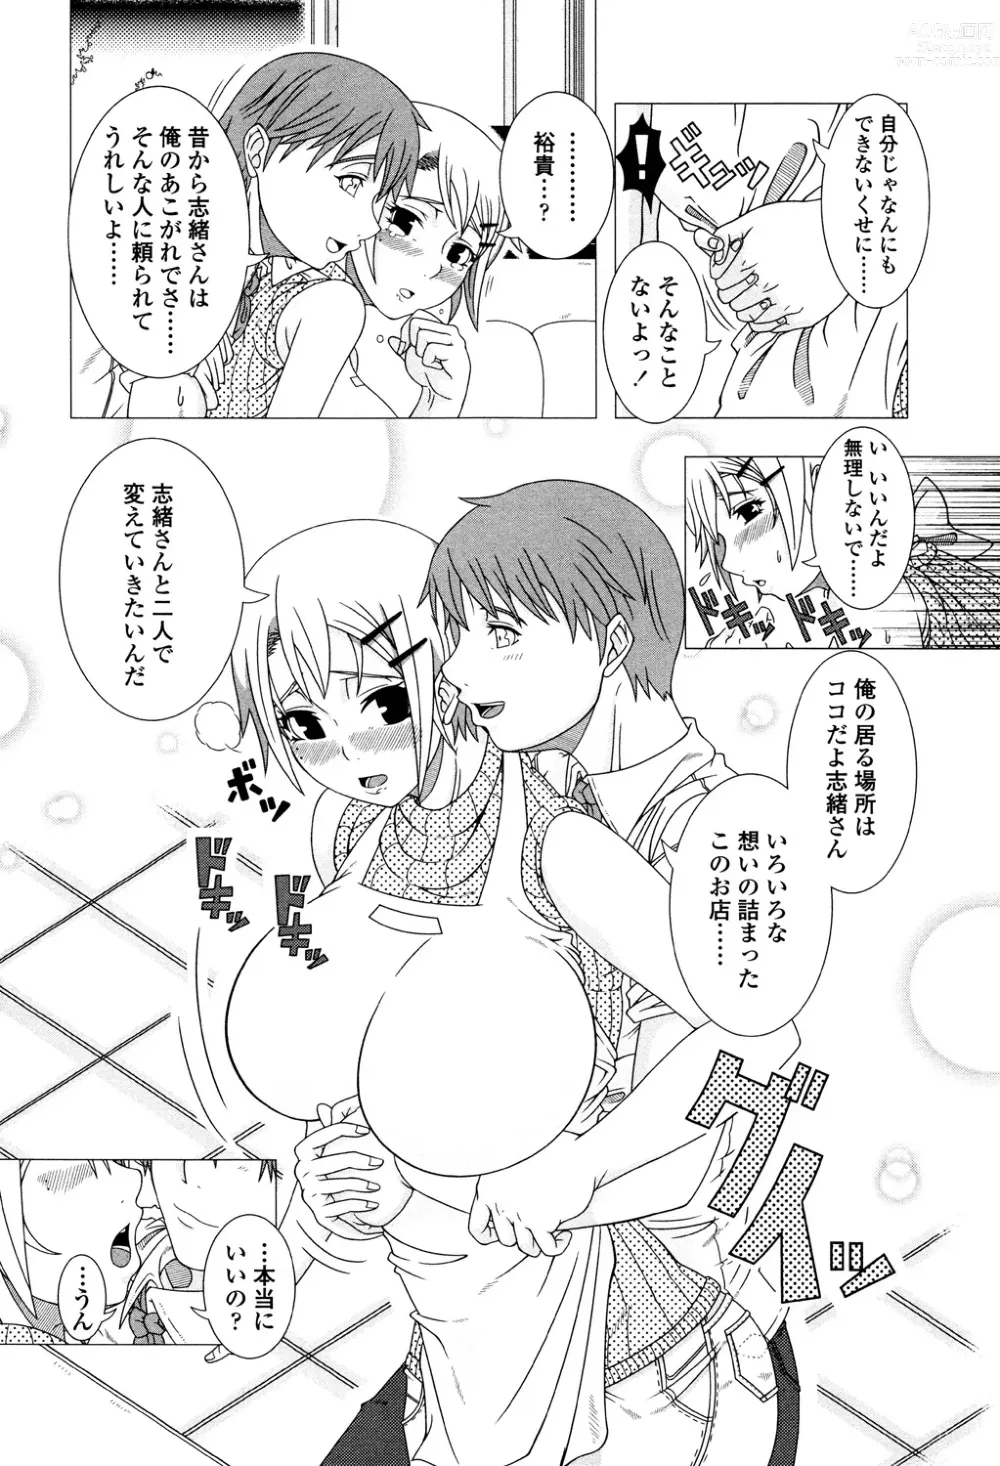 Page 196 of manga Hitozuma Life - Married Woman Life